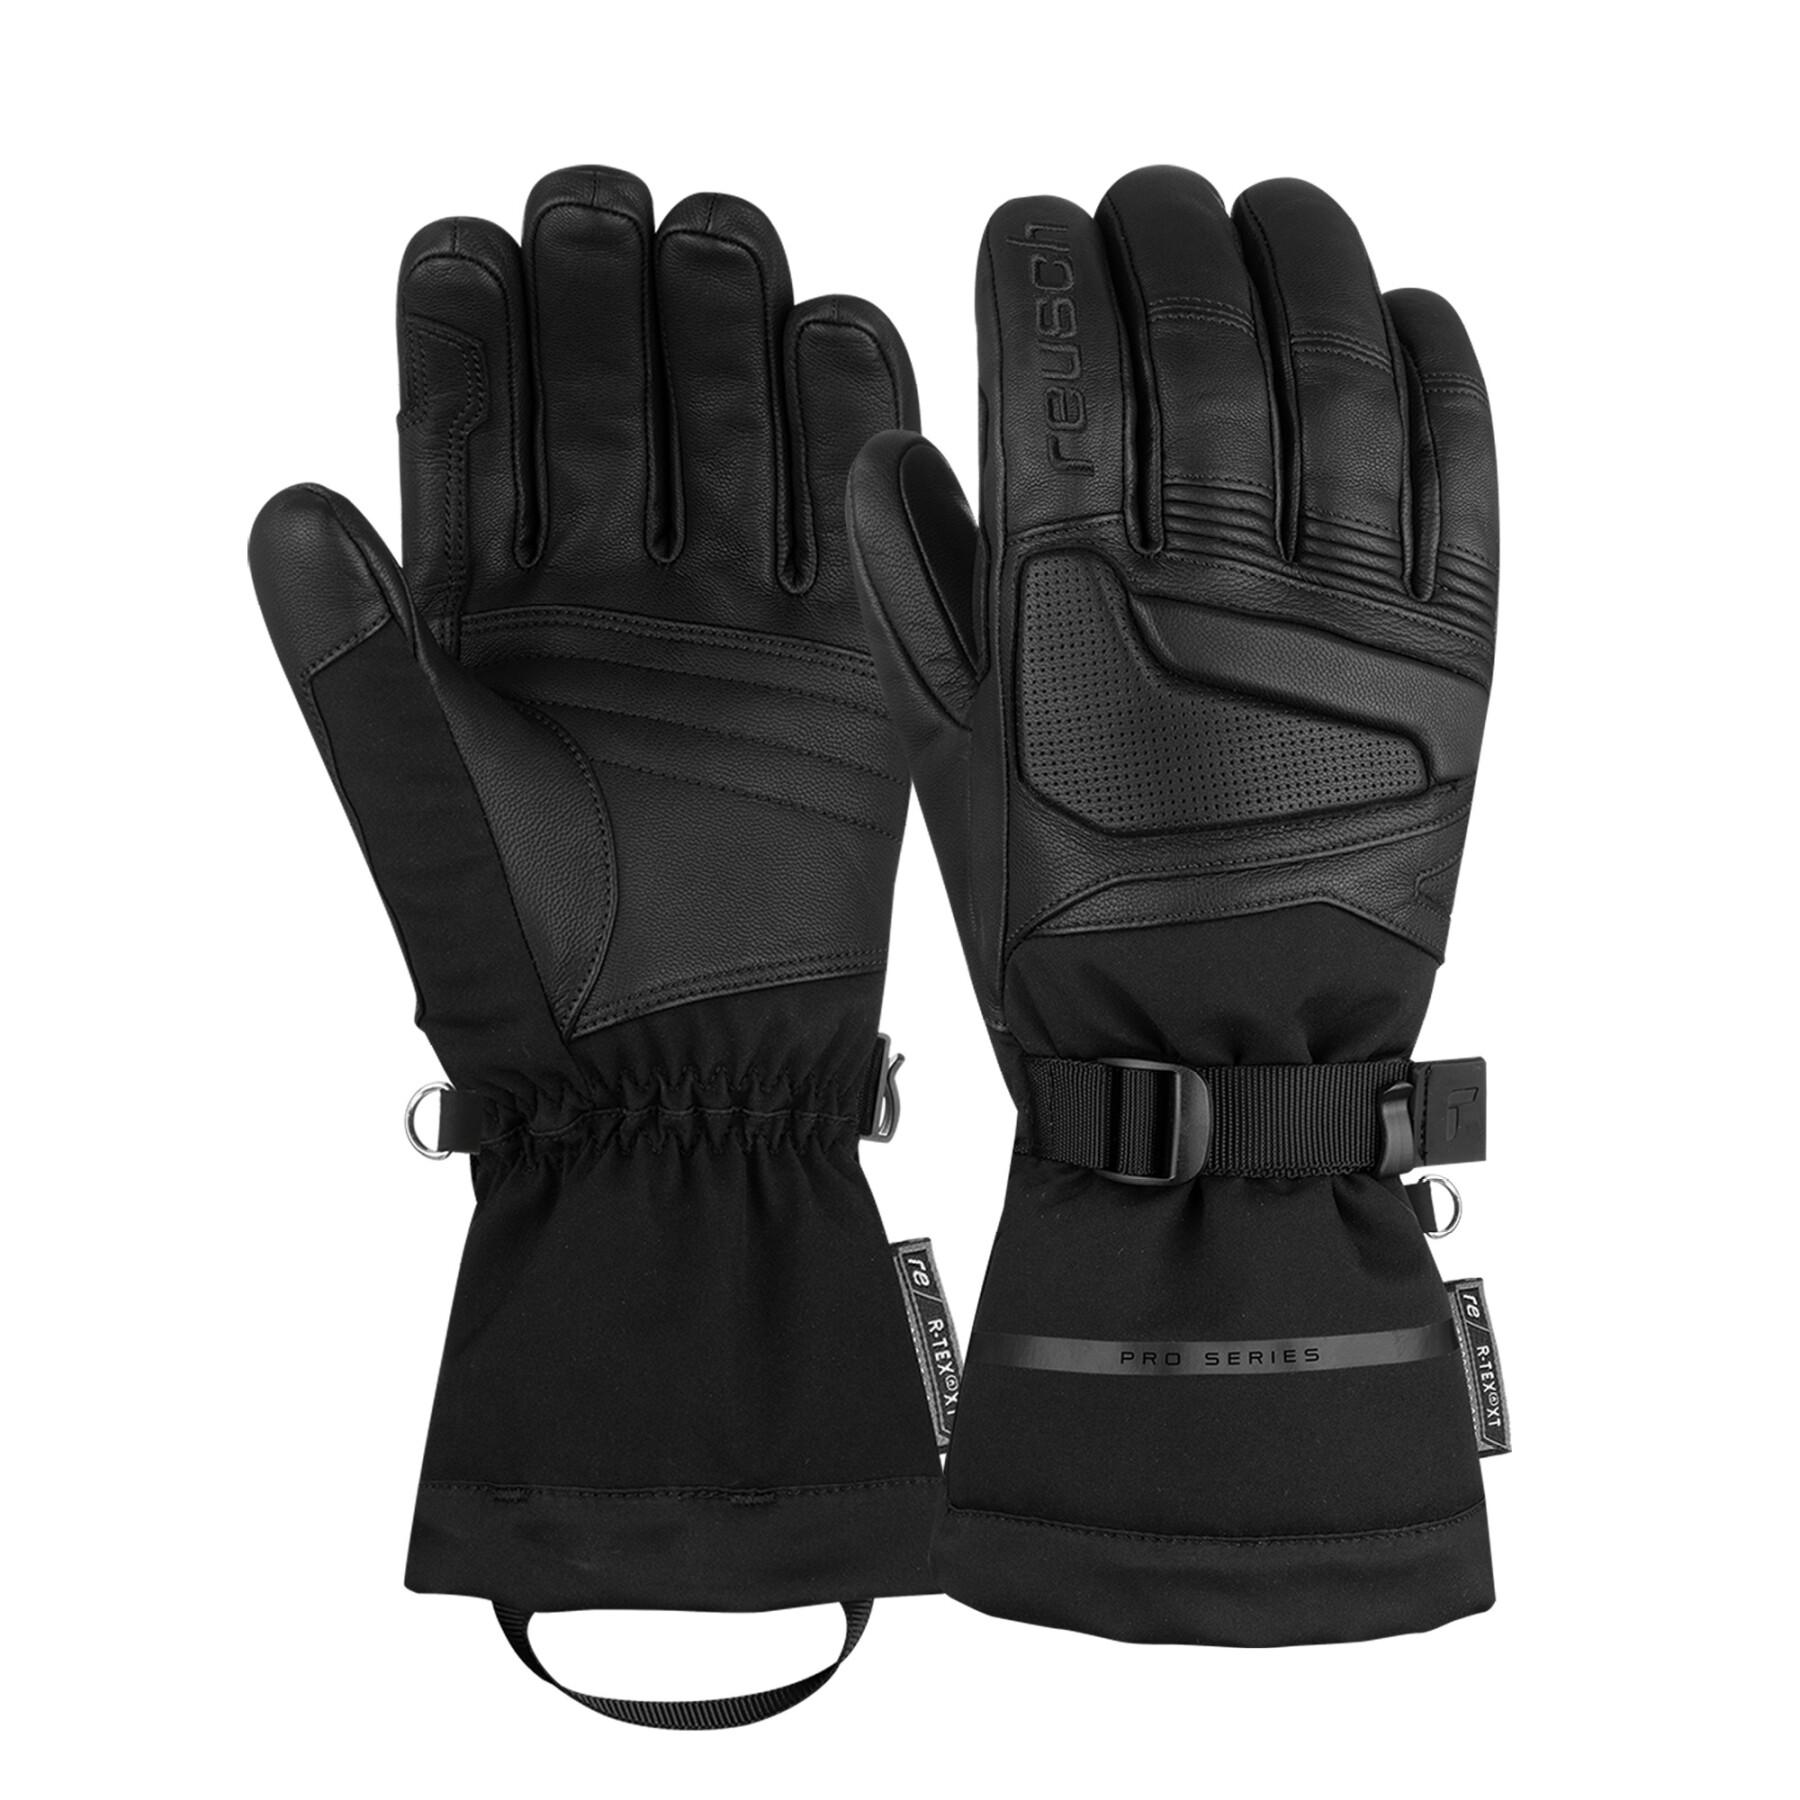 Gloves Reusch Prodigy R-TEX® XT